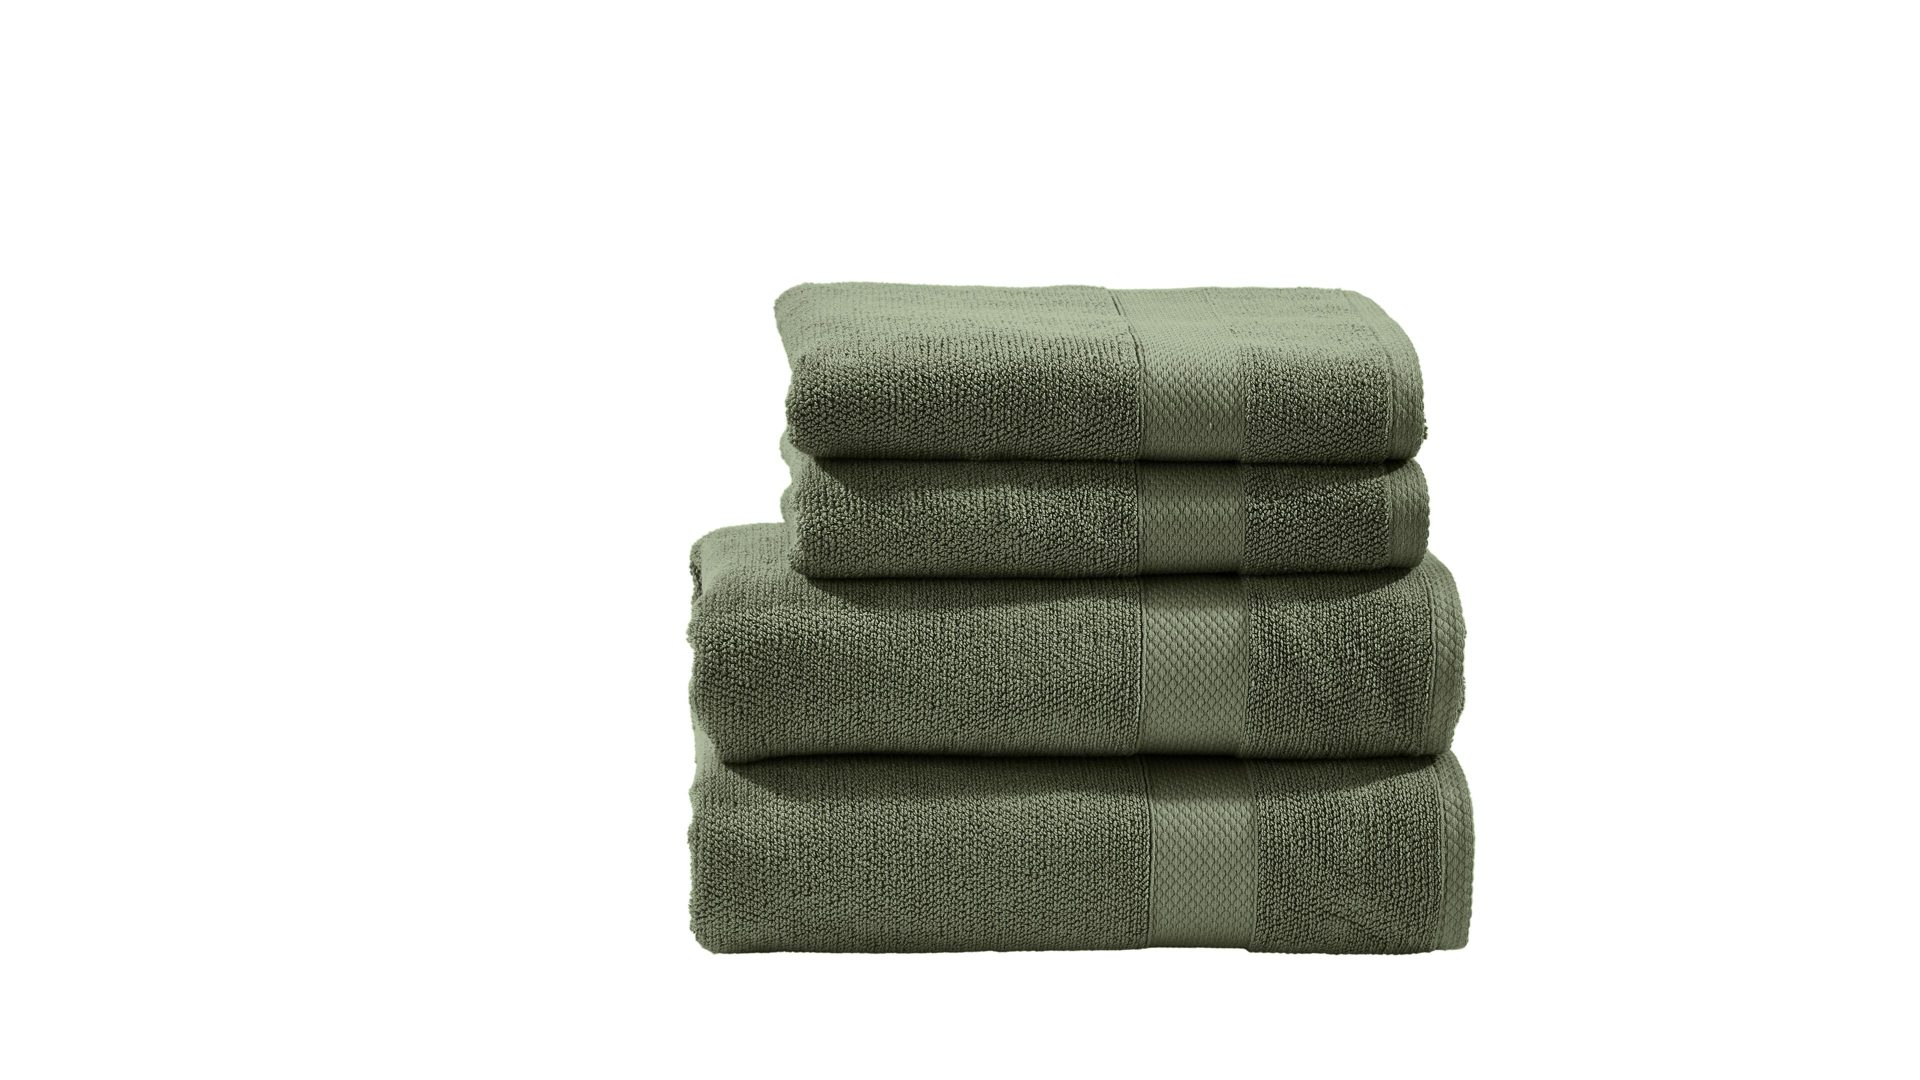 Handtuch-Set Done.® aus Stoff in Dunkelgrün done.® Handtuch-Set Deluxe khakifarbene Baumwolle – vierteilig